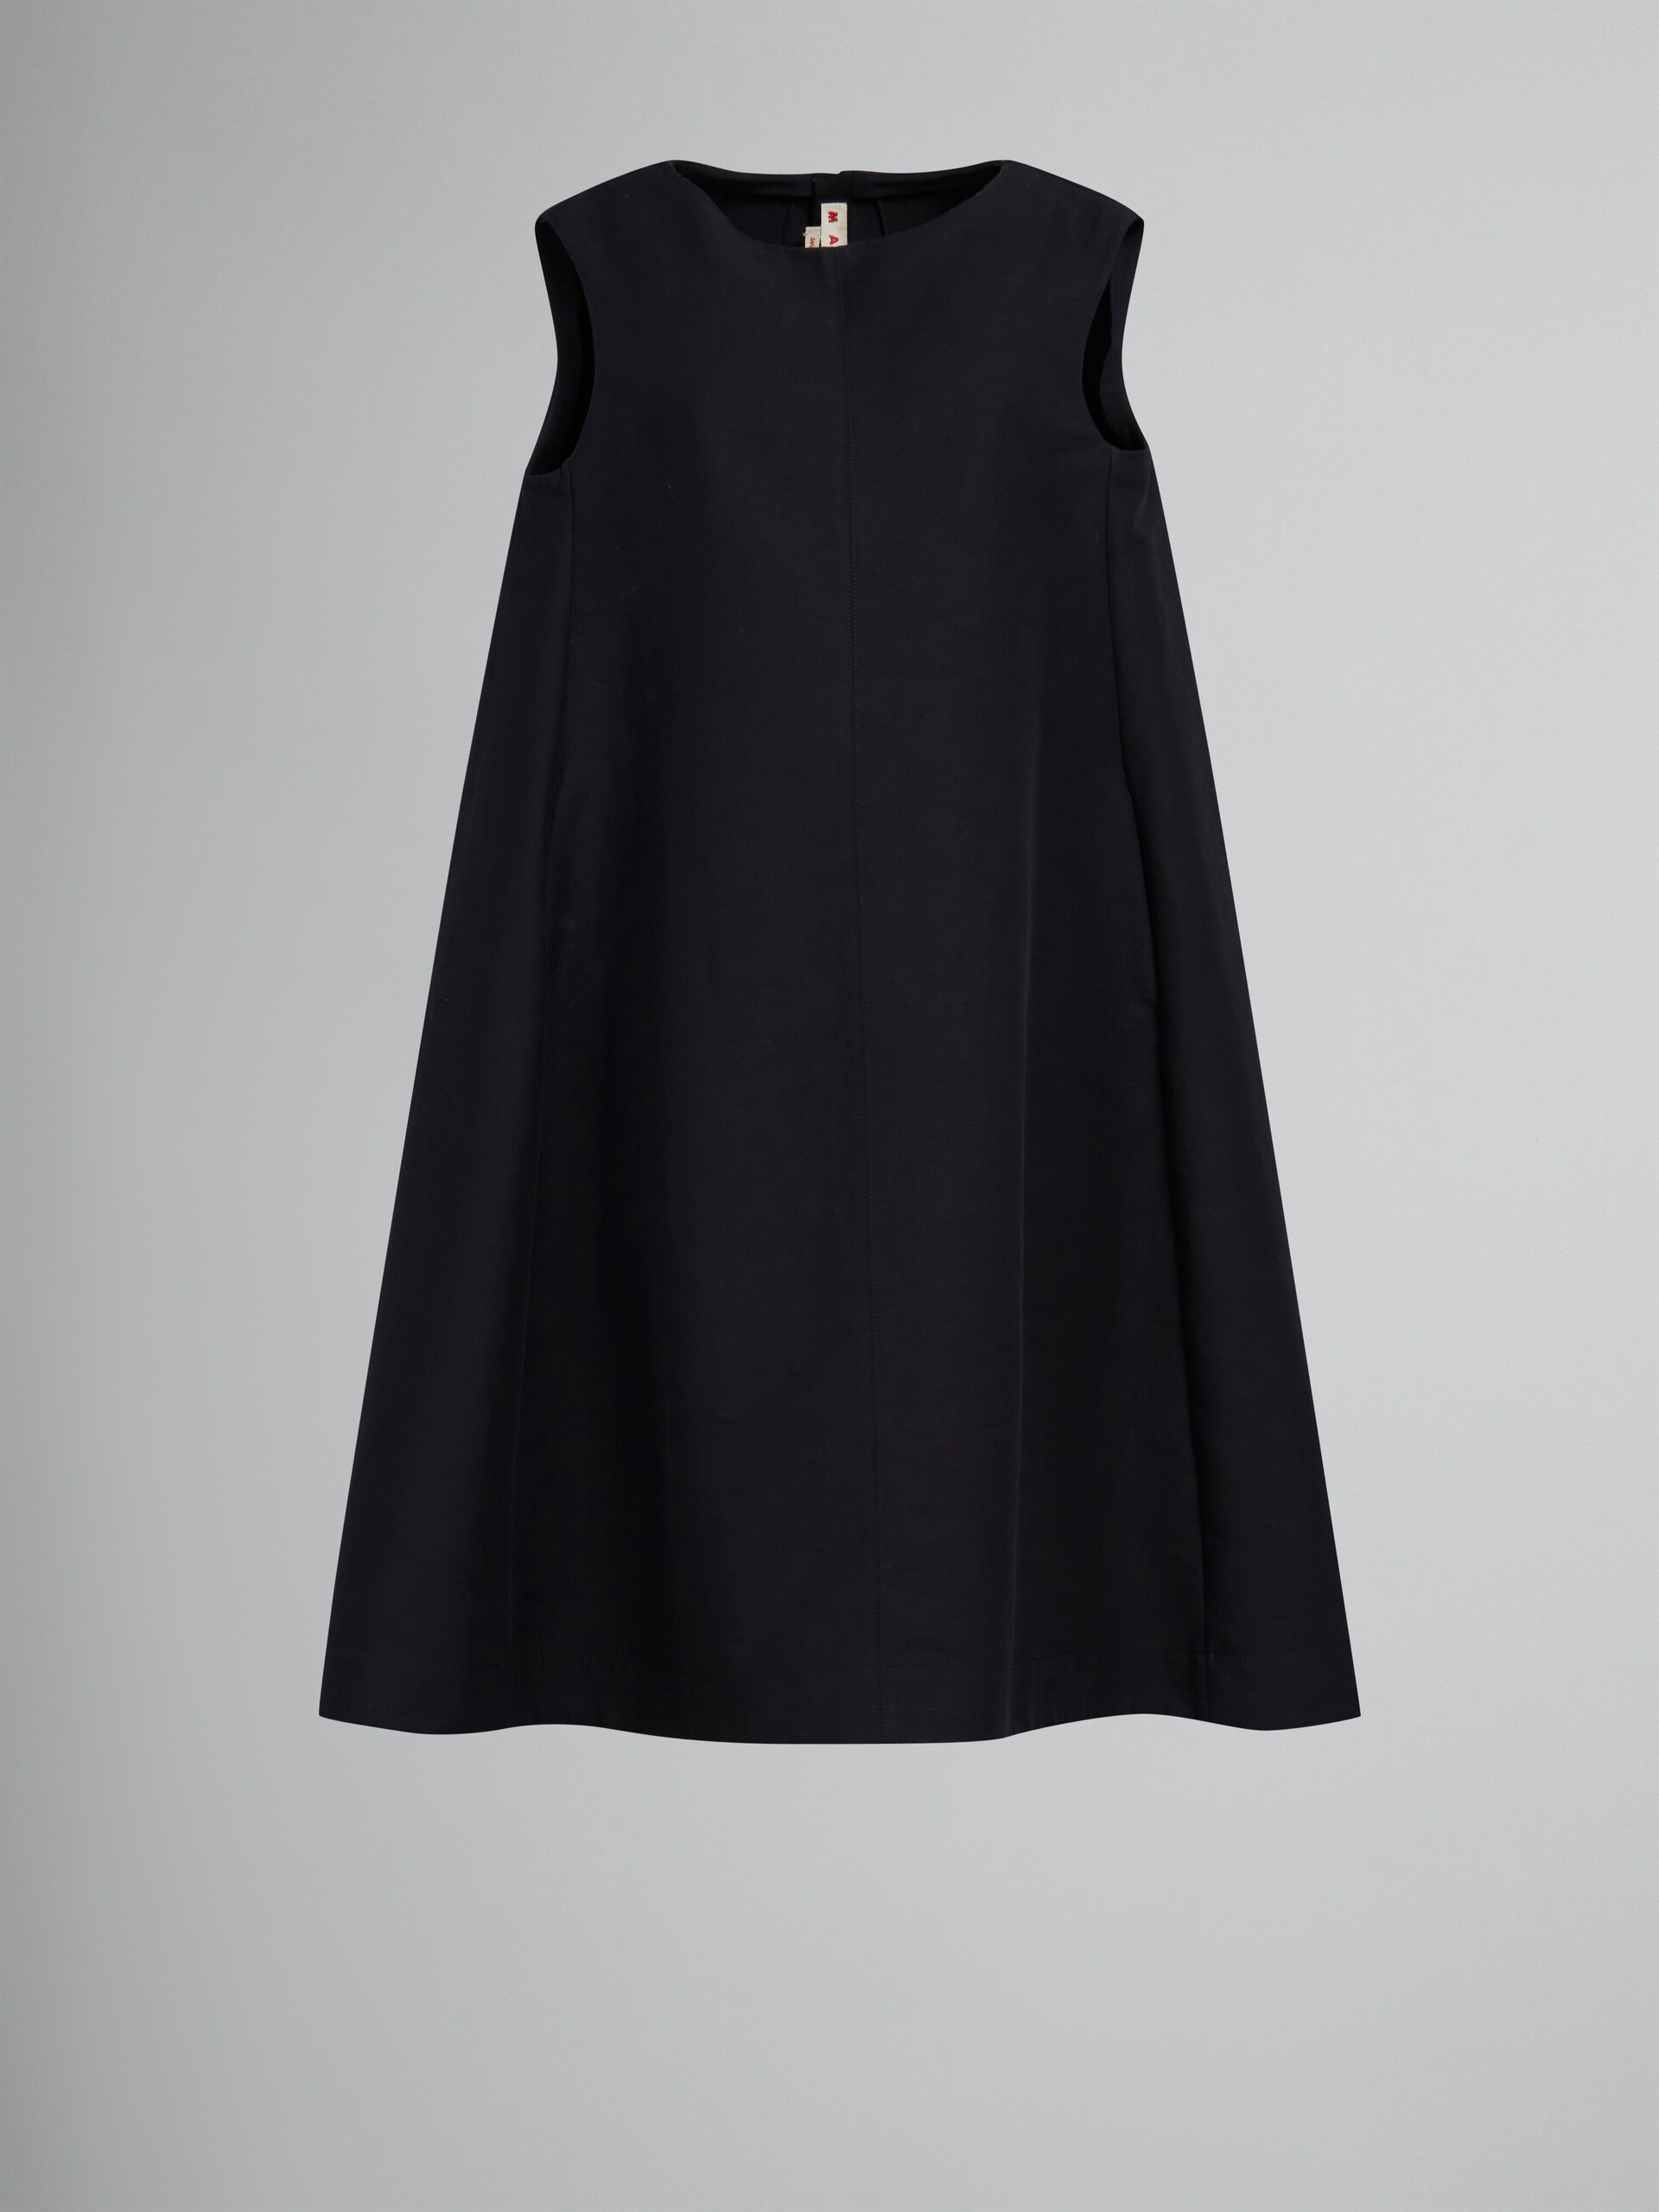 Vestido negro de cady de algodón y corte cocoon - Vestidos - Image 1